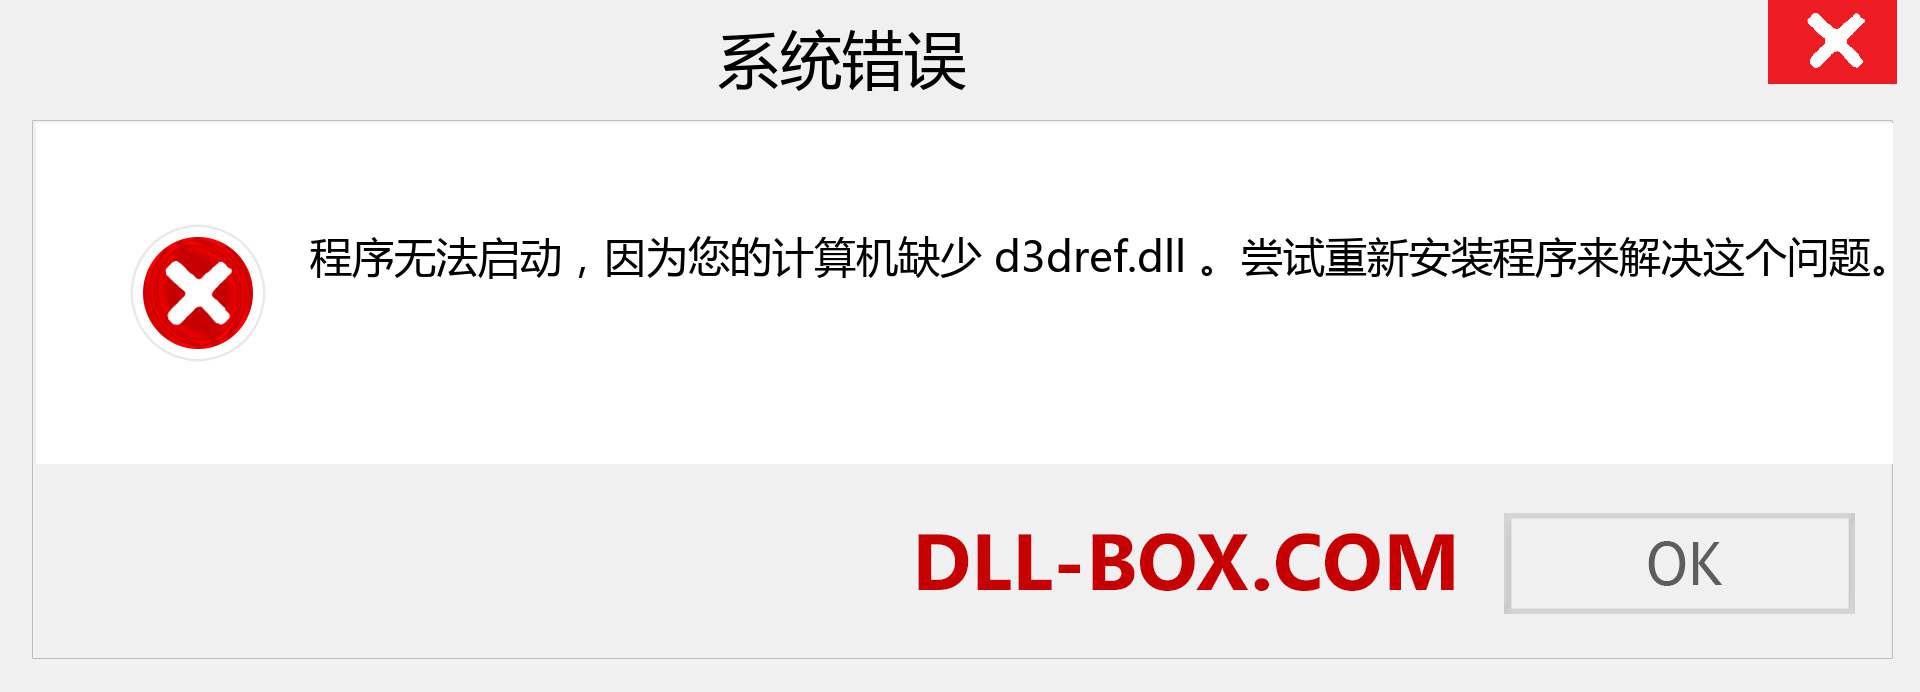 d3dref.dll 文件丢失？。 适用于 Windows 7、8、10 的下载 - 修复 Windows、照片、图像上的 d3dref dll 丢失错误